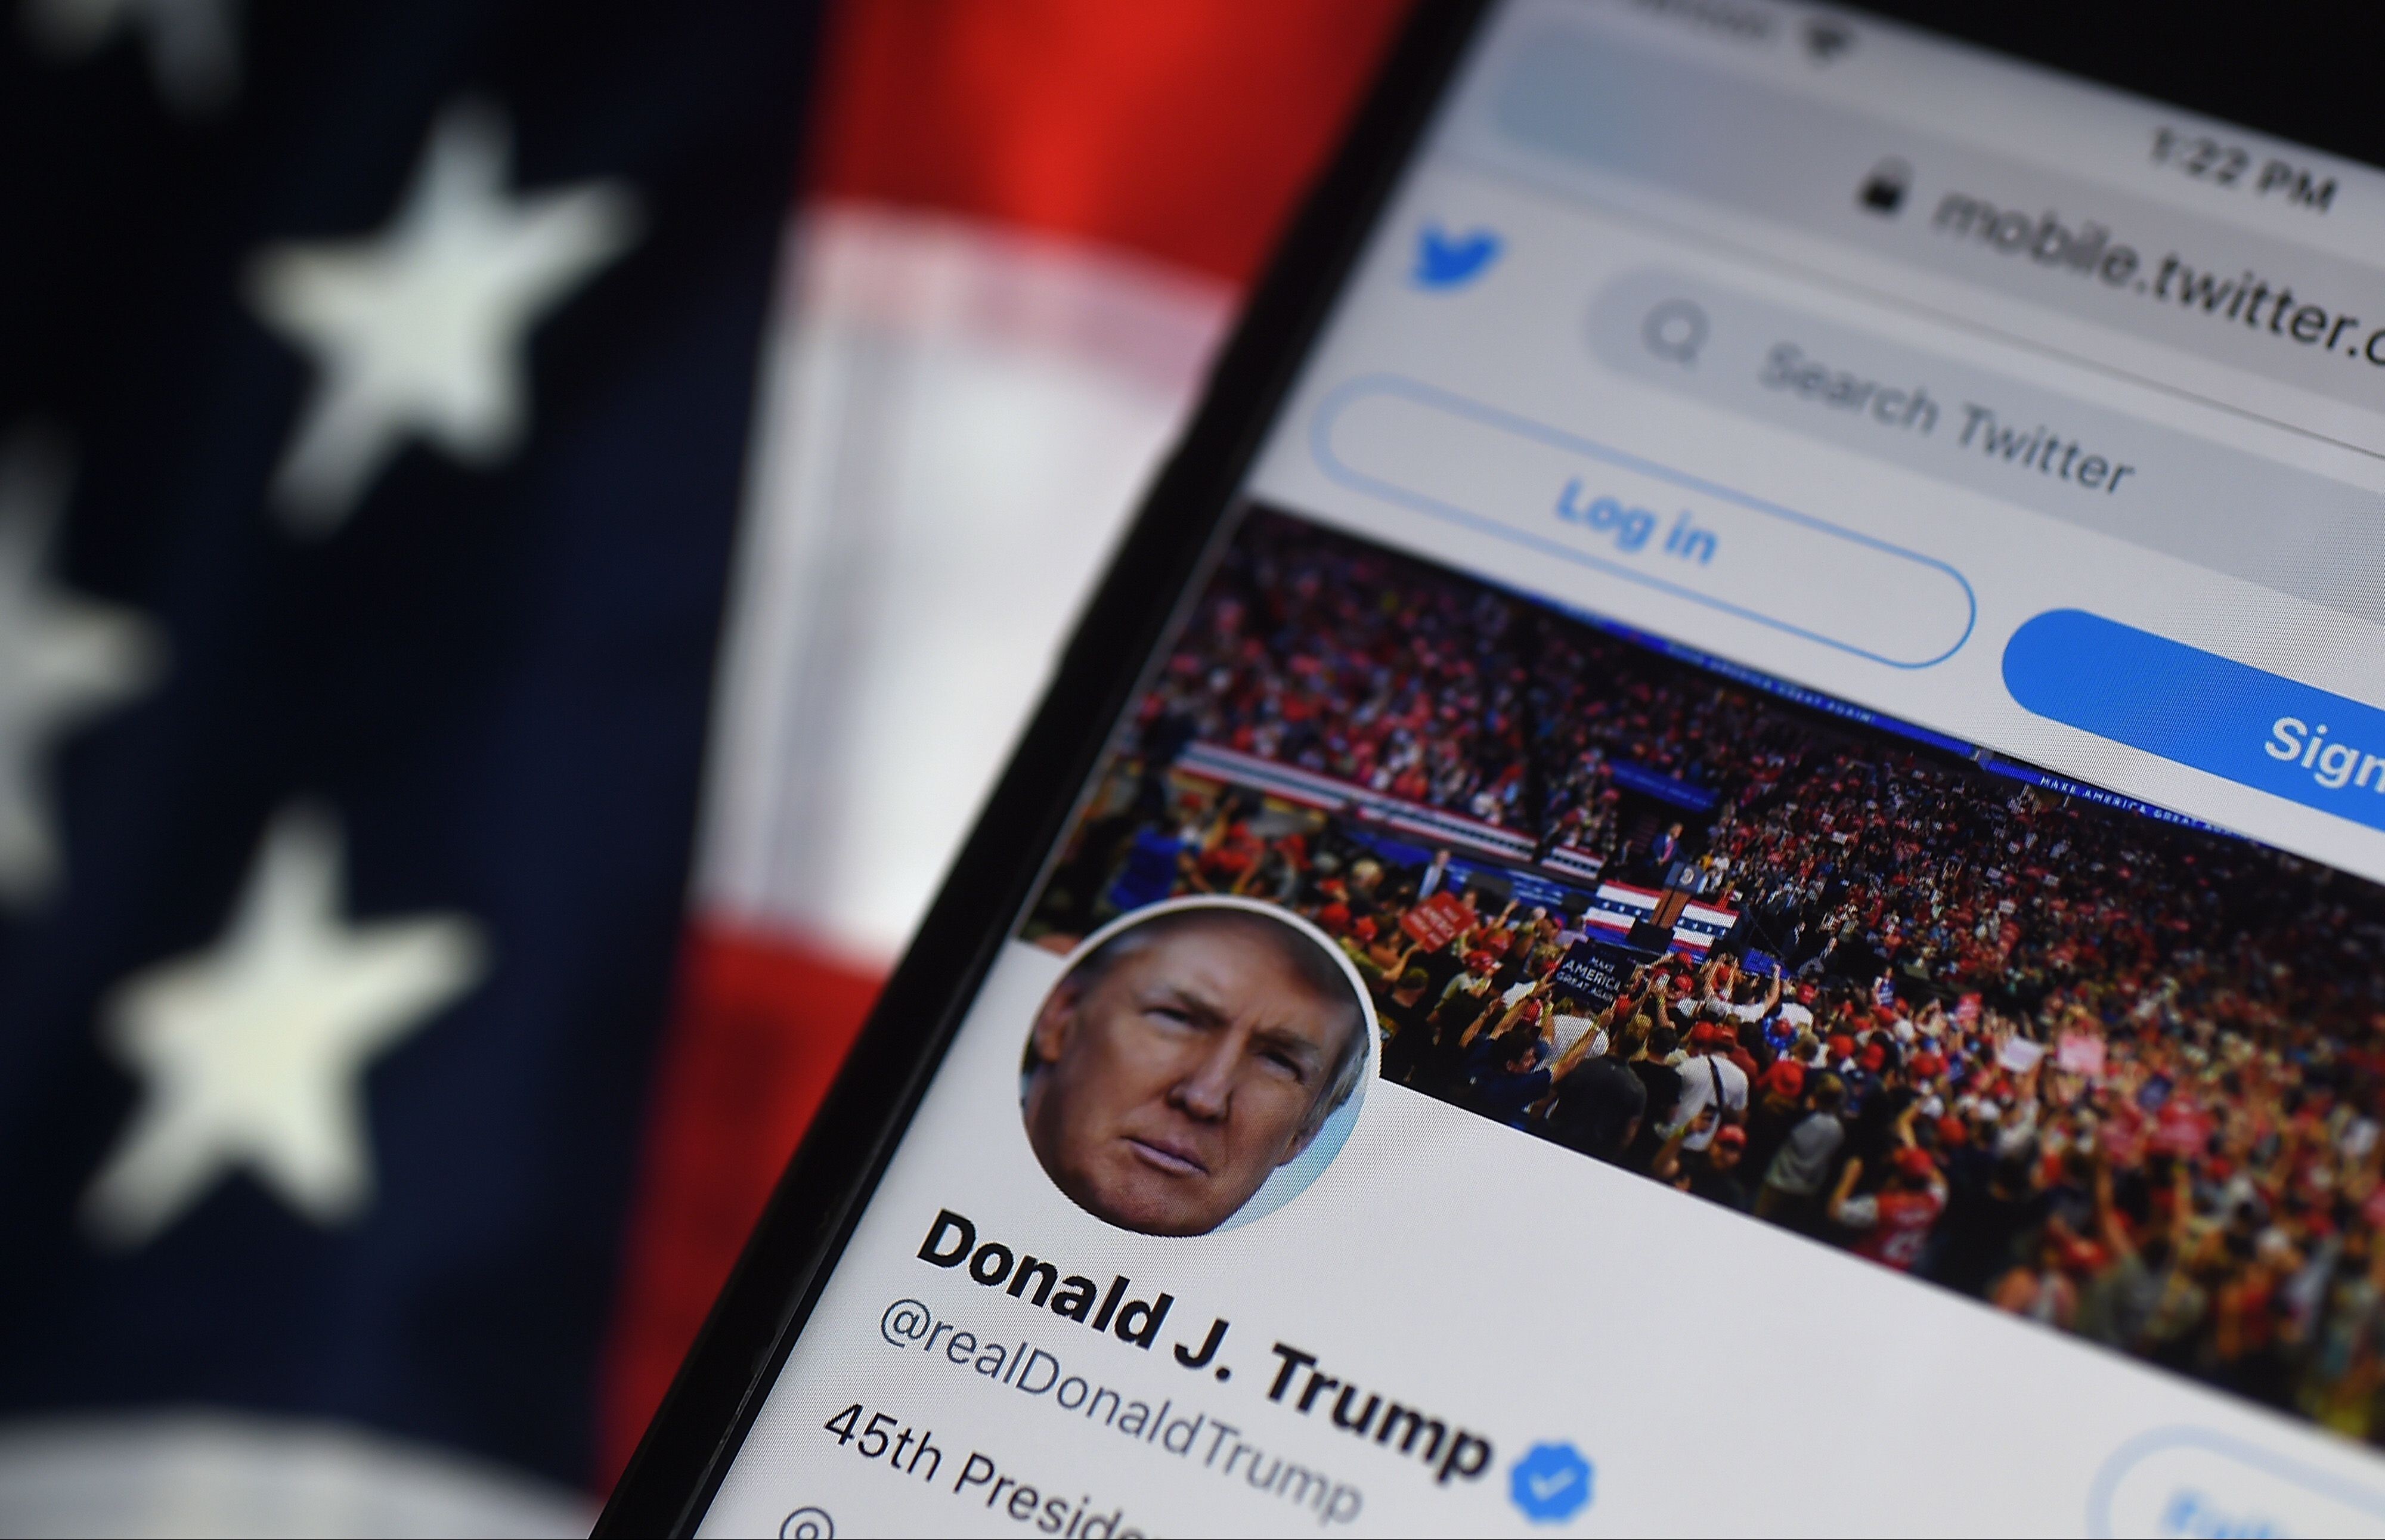 Donald Trump had a massive social media following. Photo: AFP